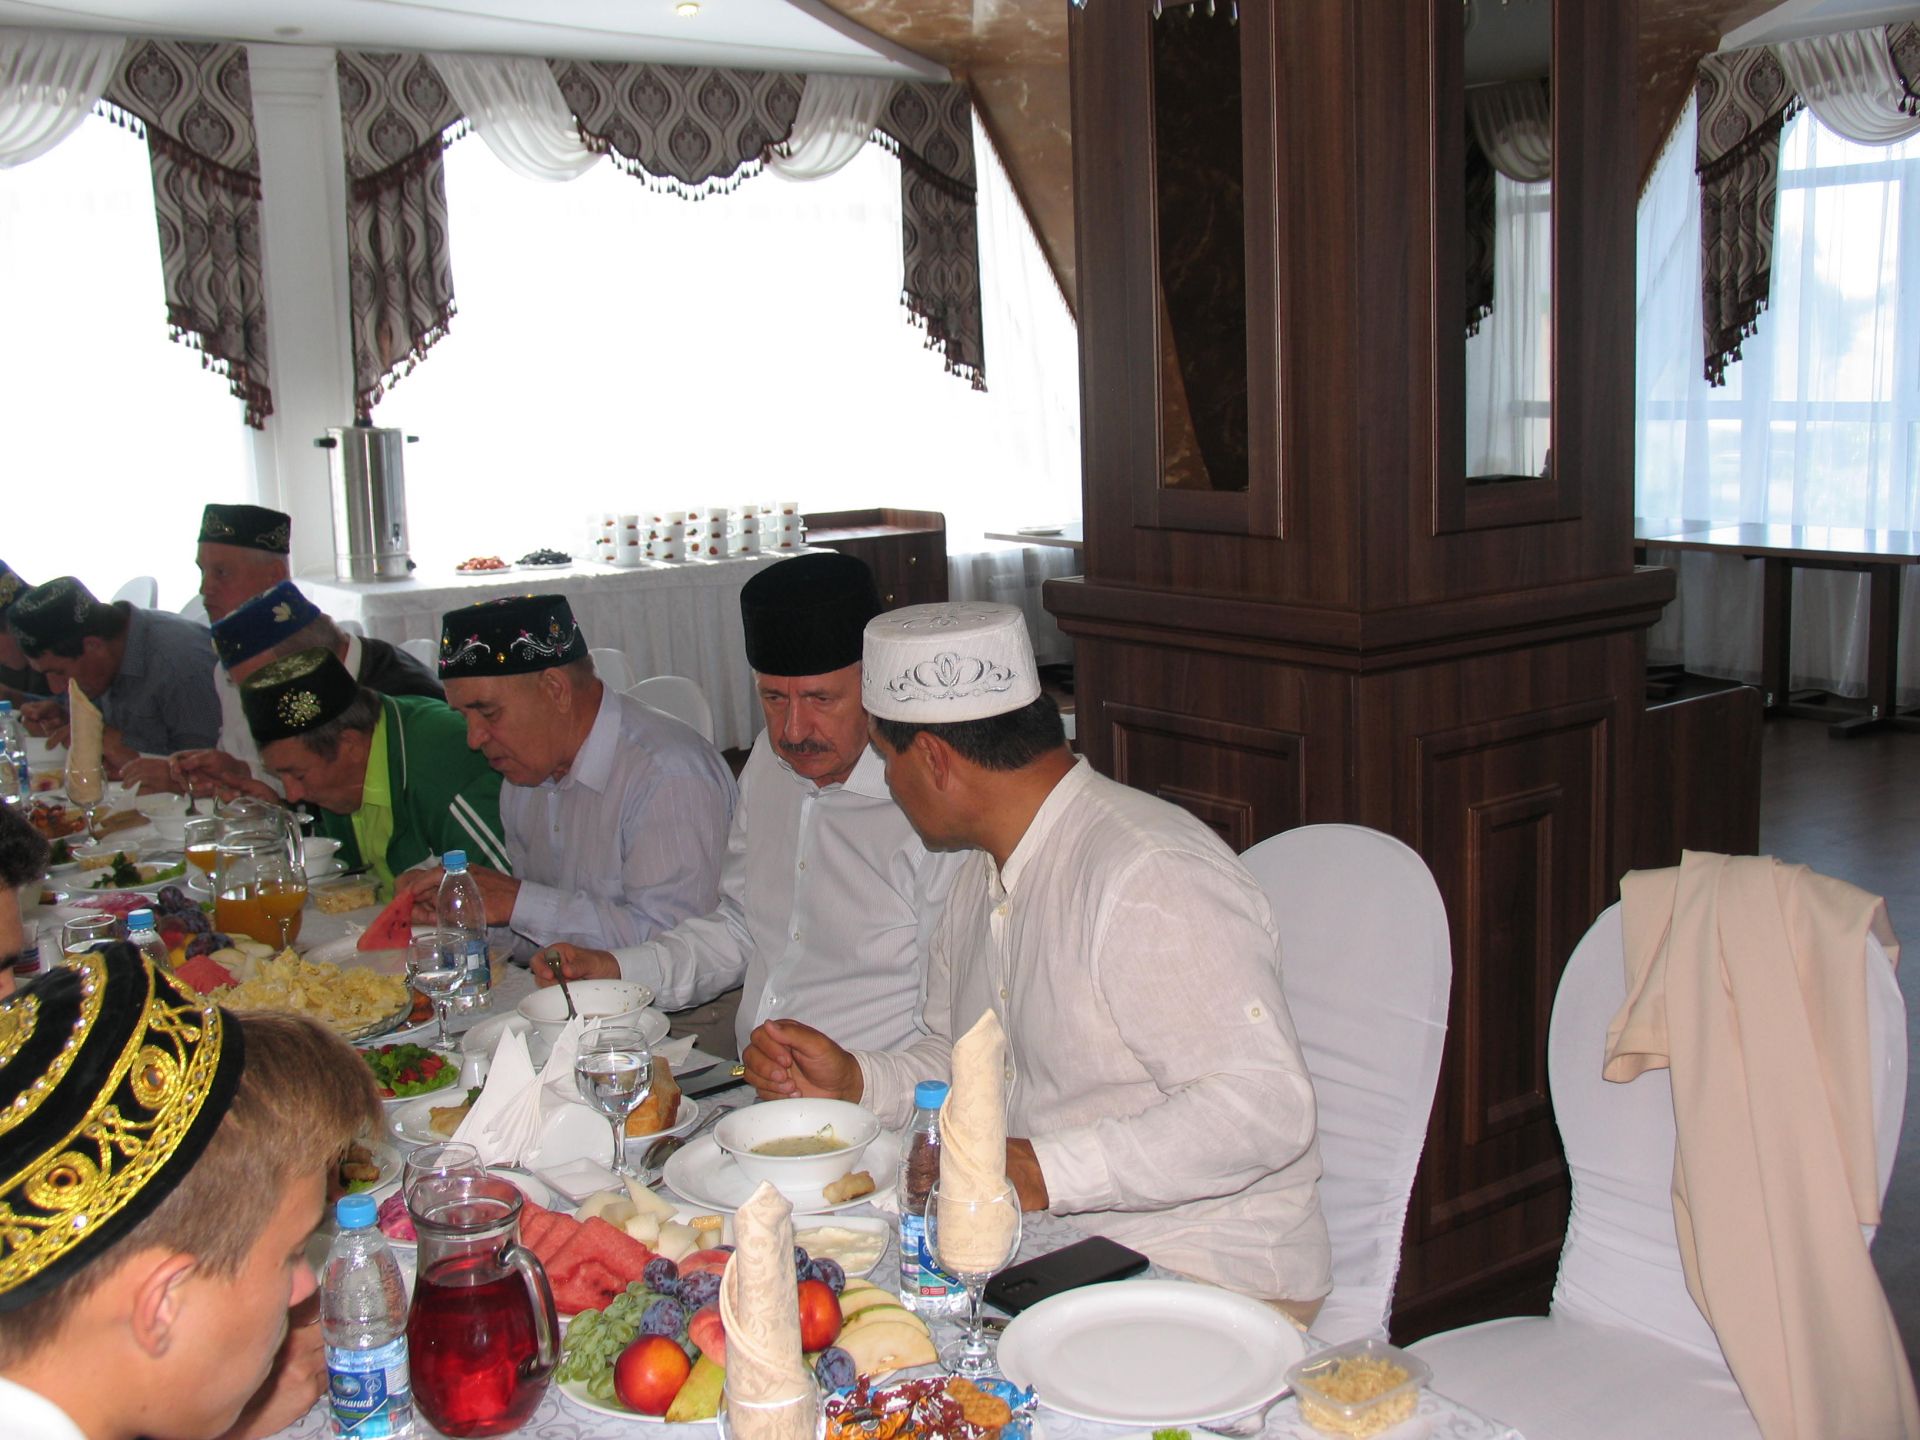 В Курбан-байрам благотворители устроили праздничный обед для прихожан мечети